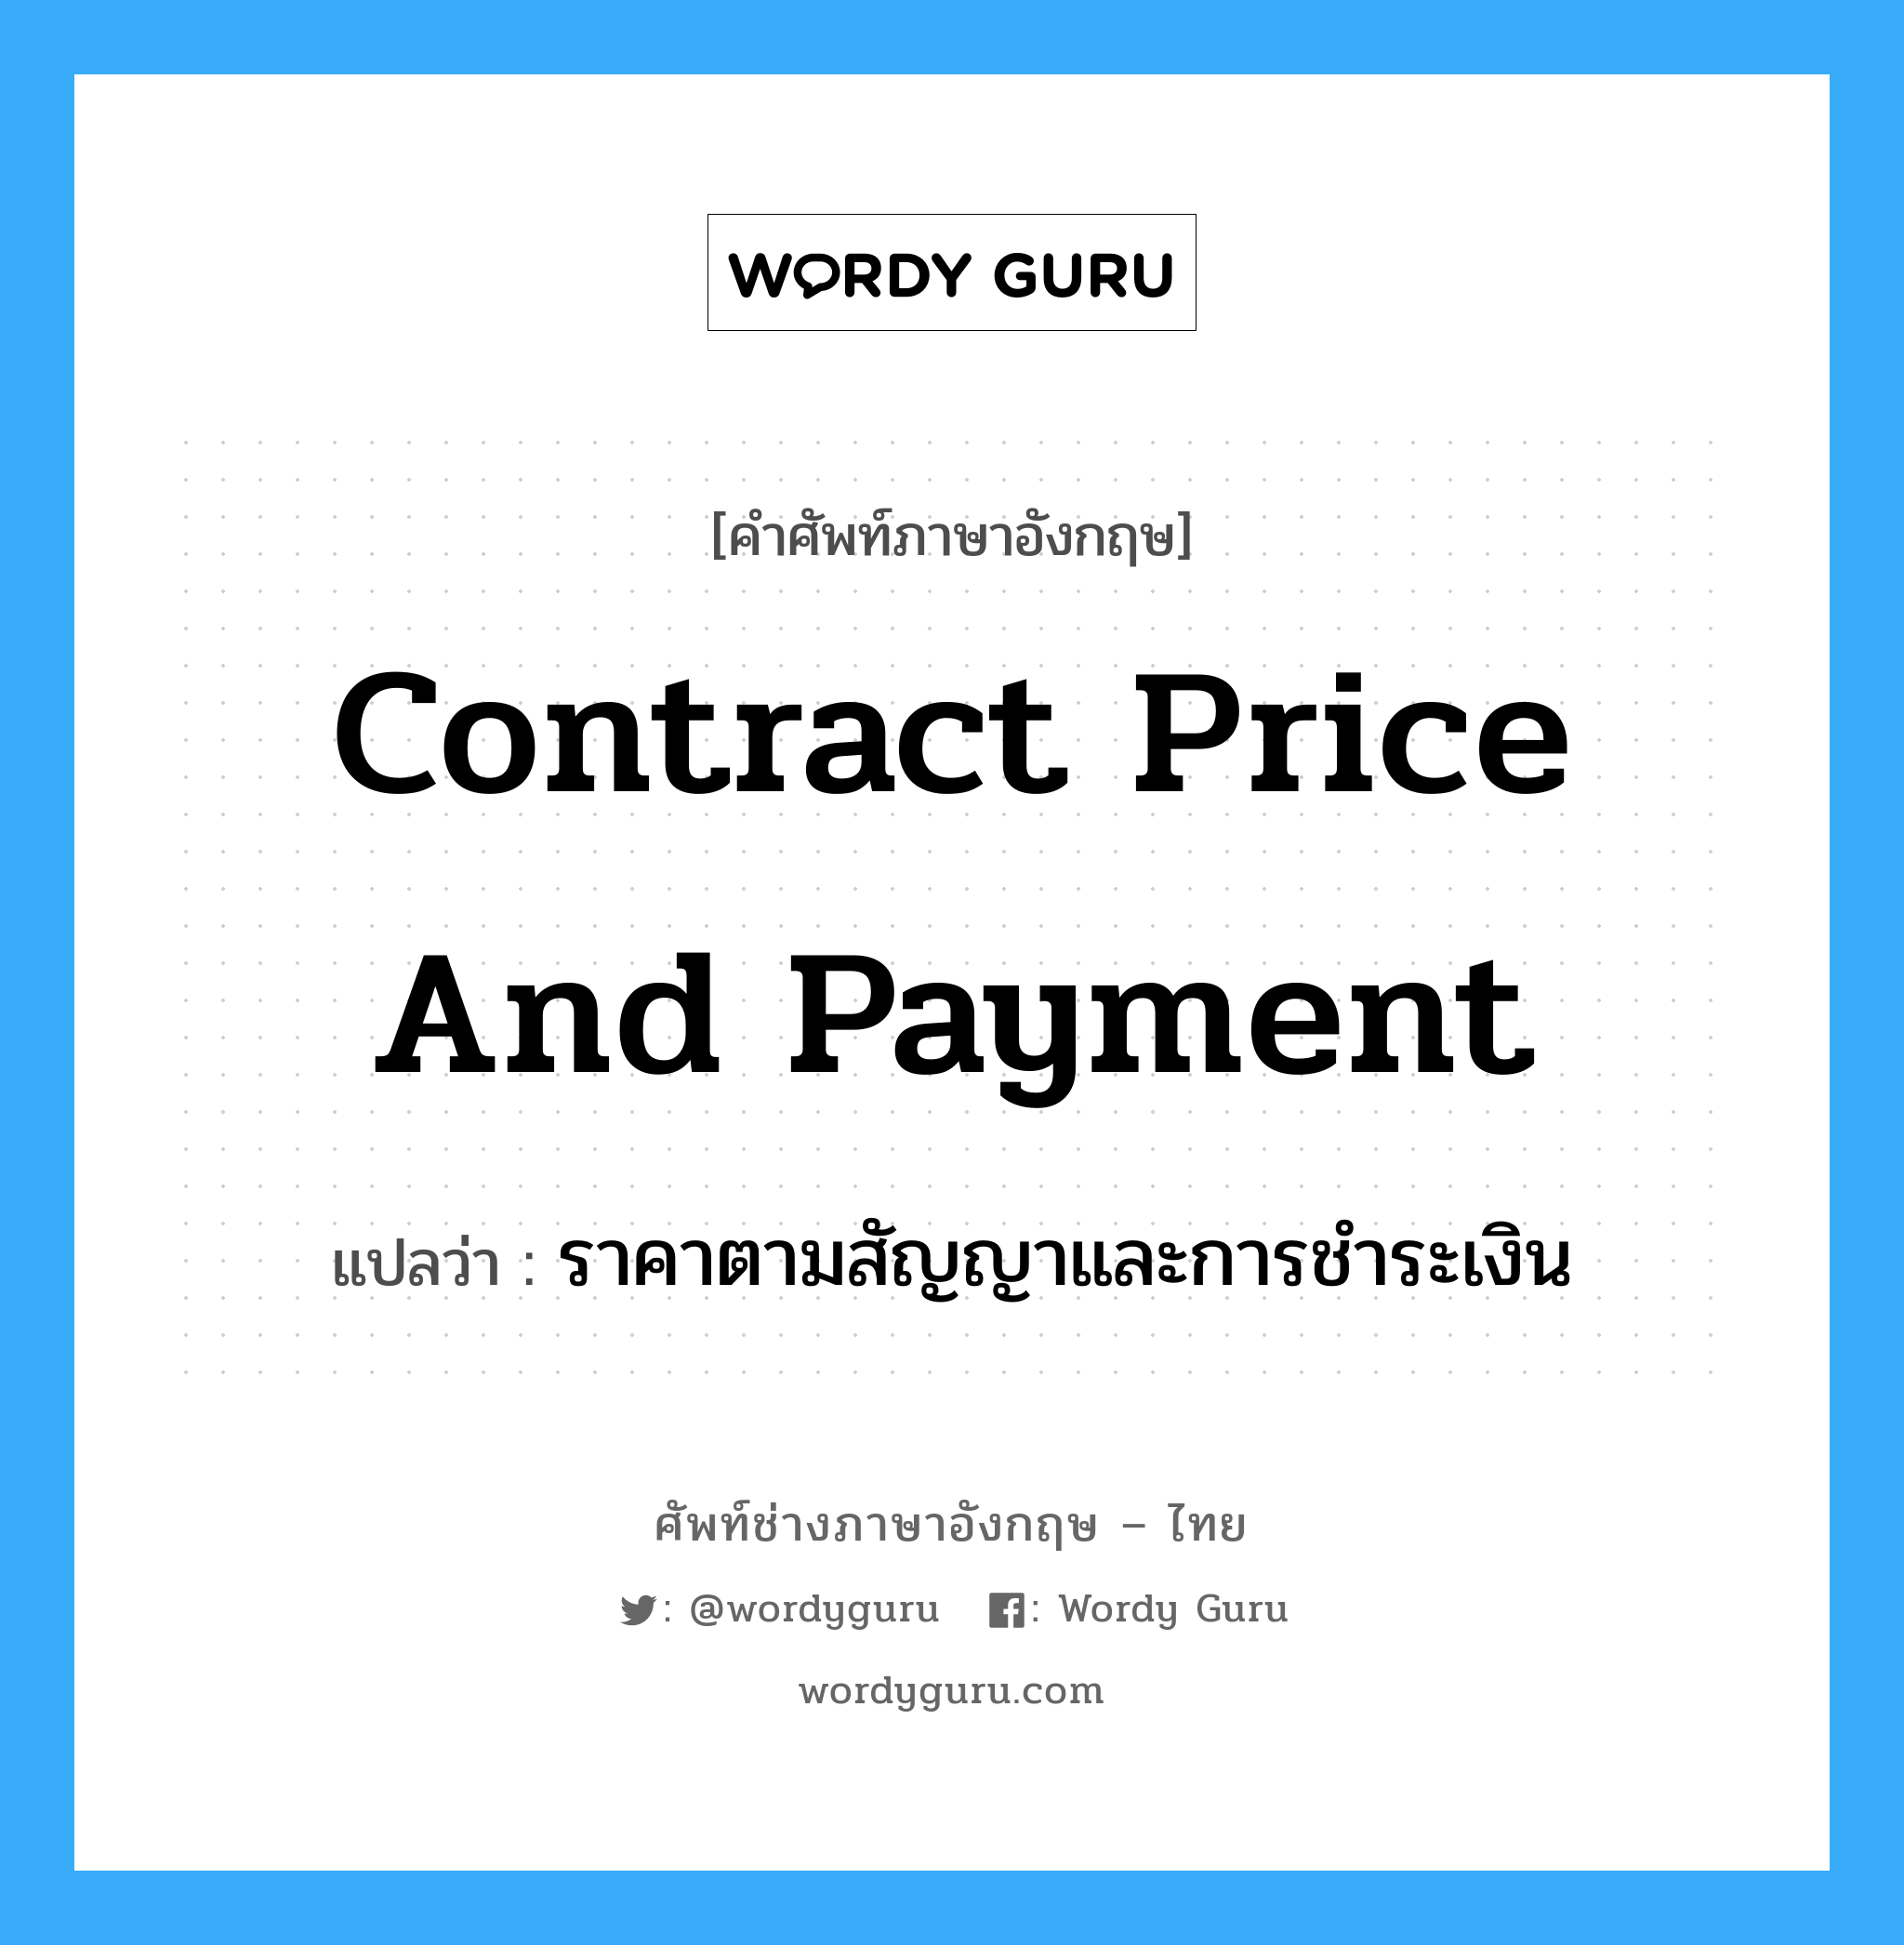 Contract price and Payment แปลว่า?, คำศัพท์ช่างภาษาอังกฤษ - ไทย Contract price and Payment คำศัพท์ภาษาอังกฤษ Contract price and Payment แปลว่า ราคาตามสัญญาและการชำระเงิน